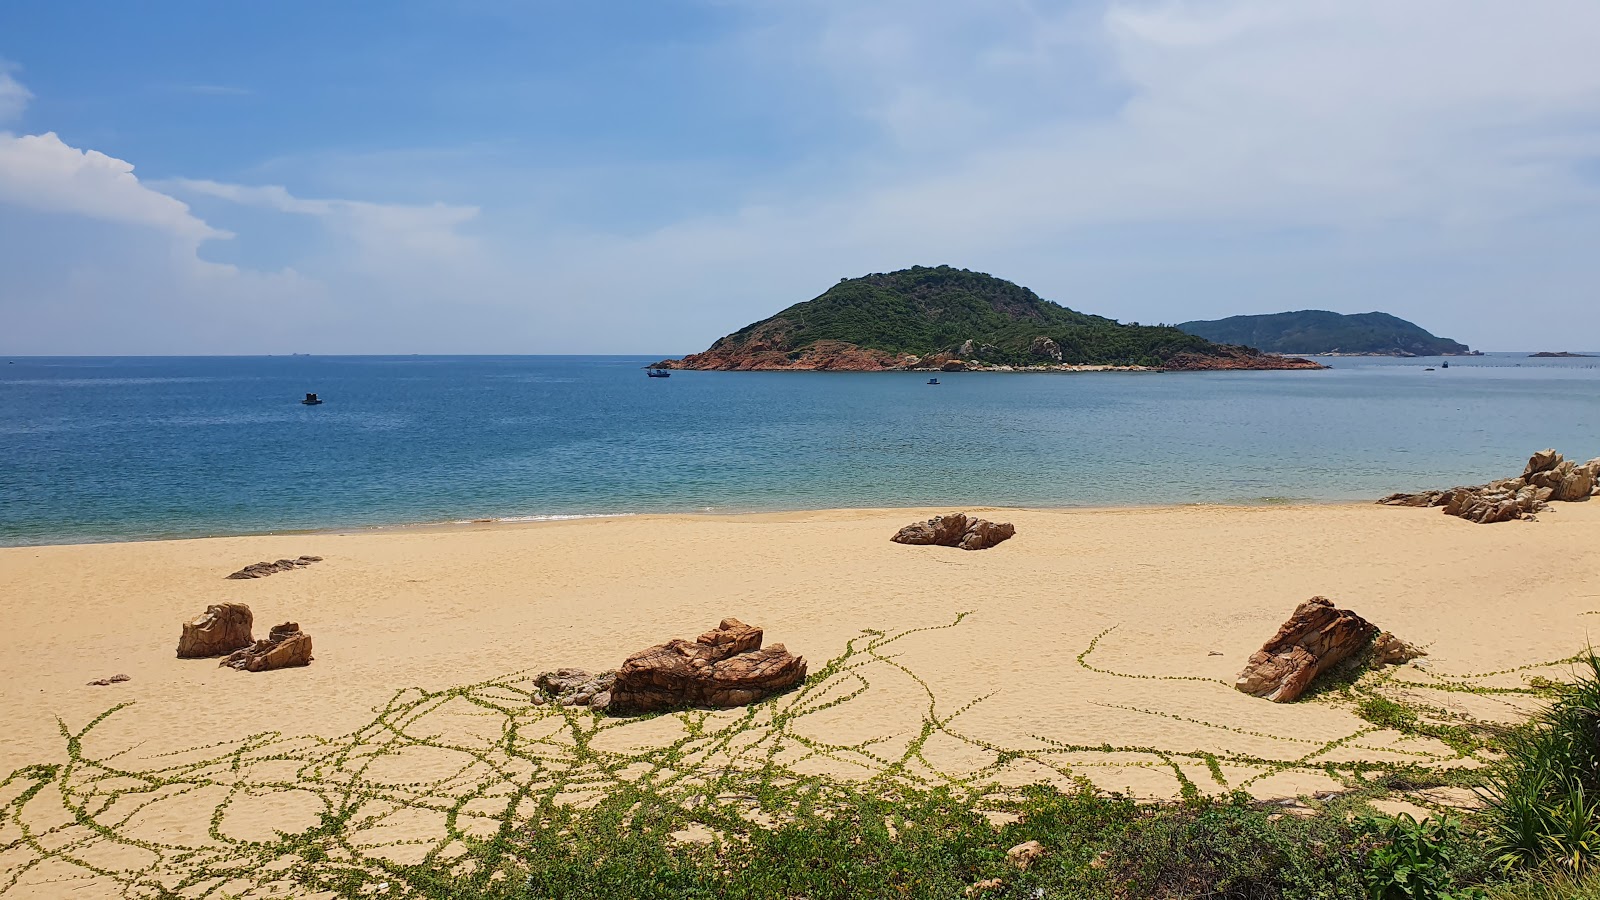 Zdjęcie Bai Xep Beach - popularne miejsce wśród znawców relaksu